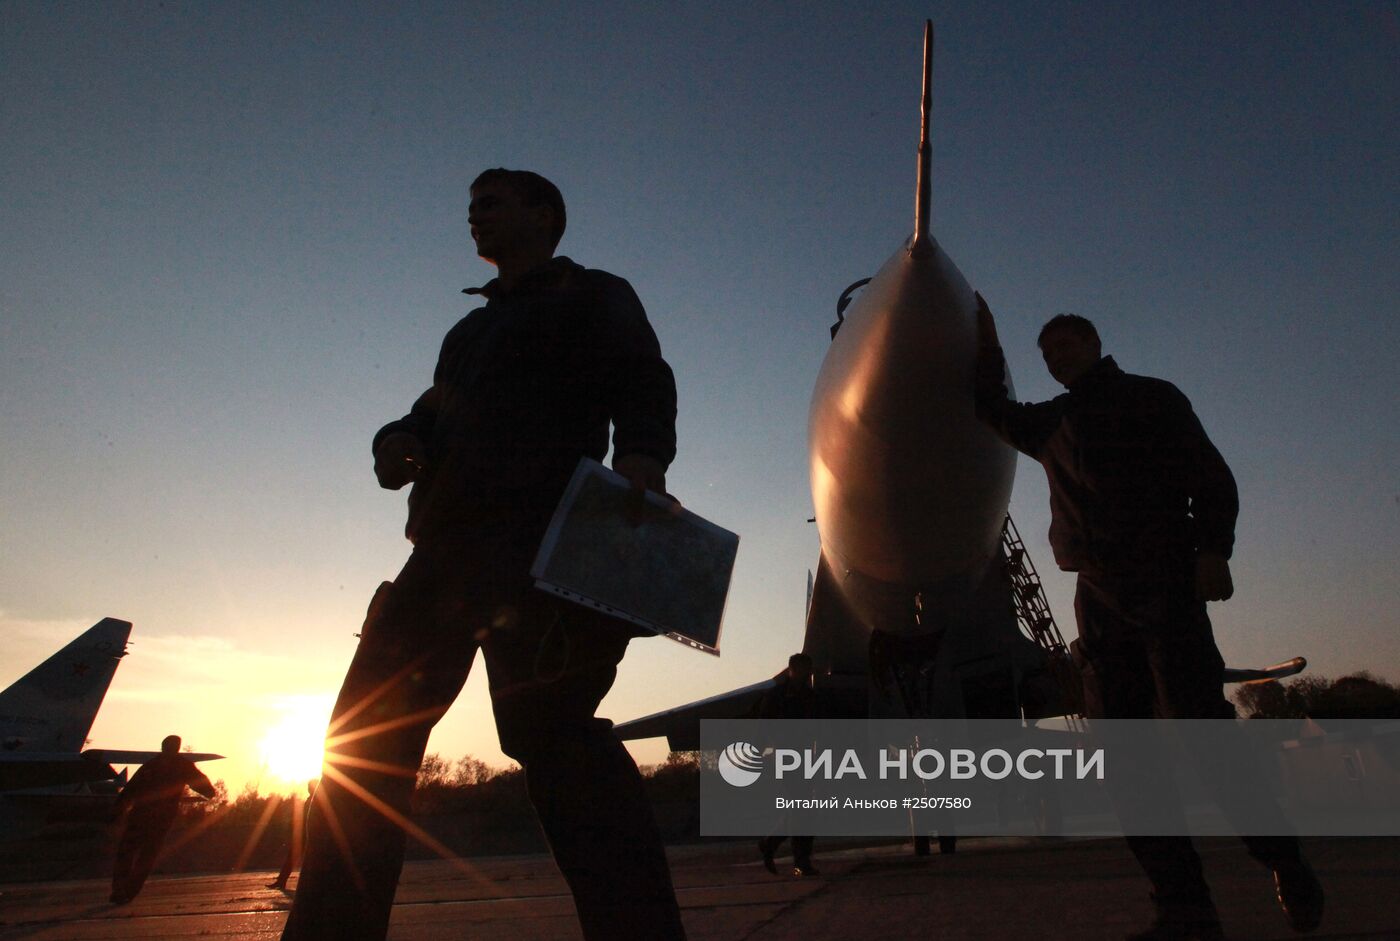 Авиаполк Восточного военного округа получил два новых истребителя Су-30 М2